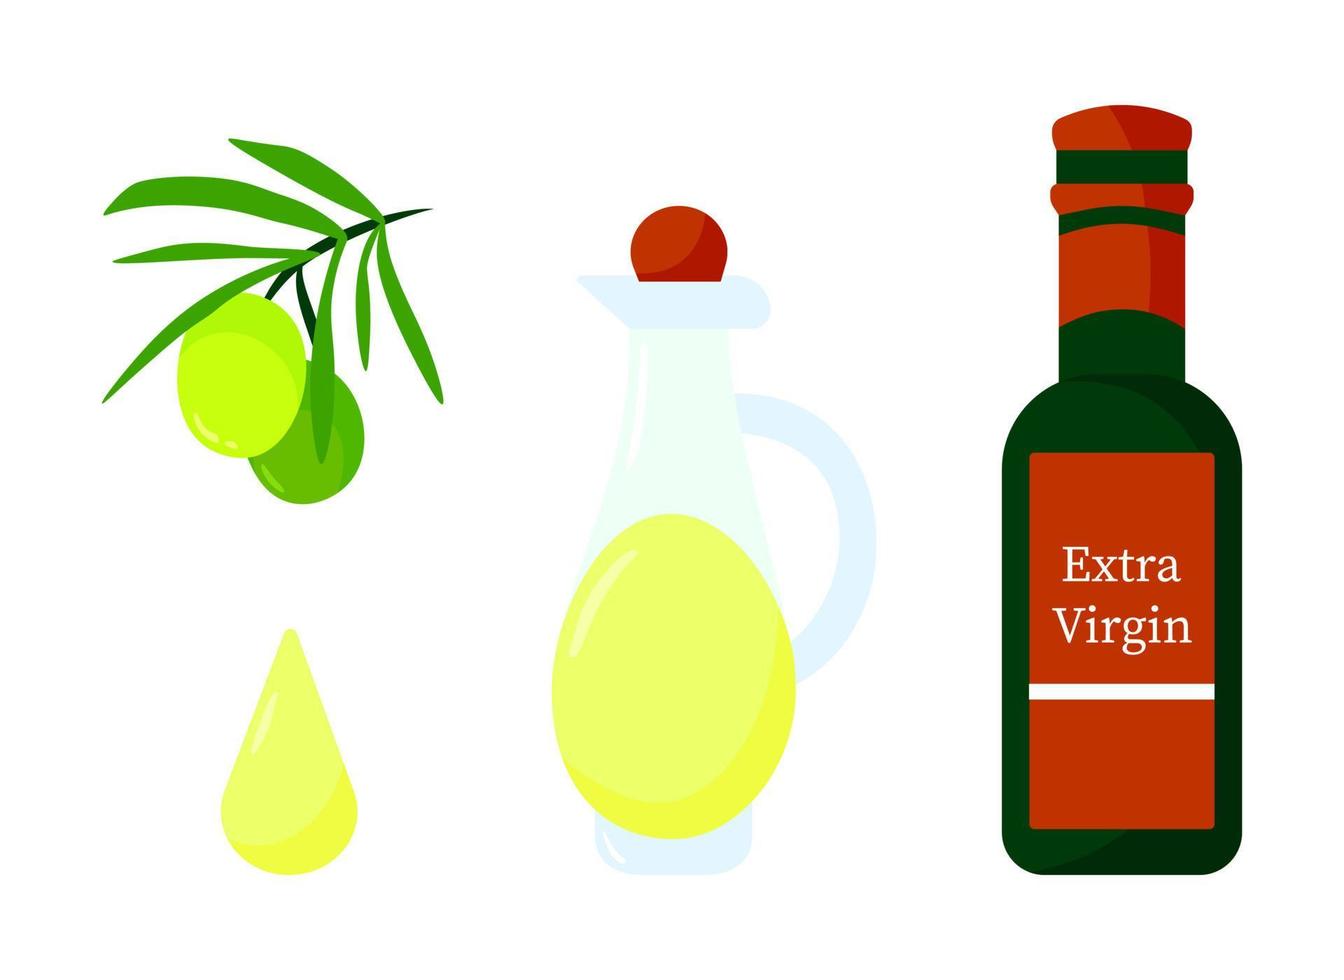 rama de olivo verde con frutas y botella de aceite de oliva ilustración de dibujos animados aislado sobre fondo blanco. vector colorido concepto de comida sana orgánica fresca. elemento de diseño de marca de logotipo. conjunto de iconos de aceitunas